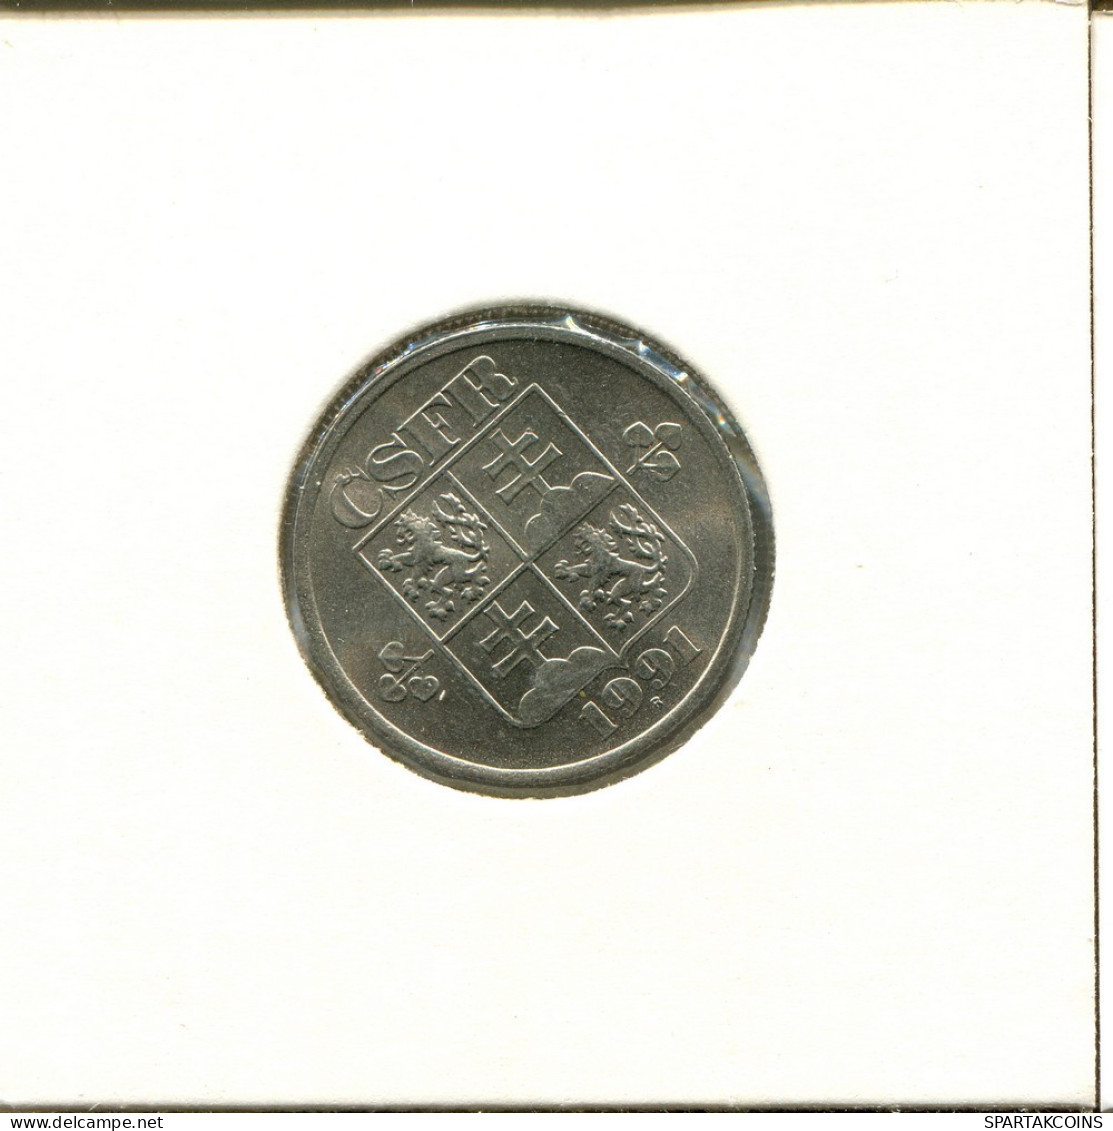 50 HALERU 1991 CHECOSLOVAQUIA CZECHOESLOVAQUIA SLOVAKIA Moneda #AS999.E.A - Tschechoslowakei